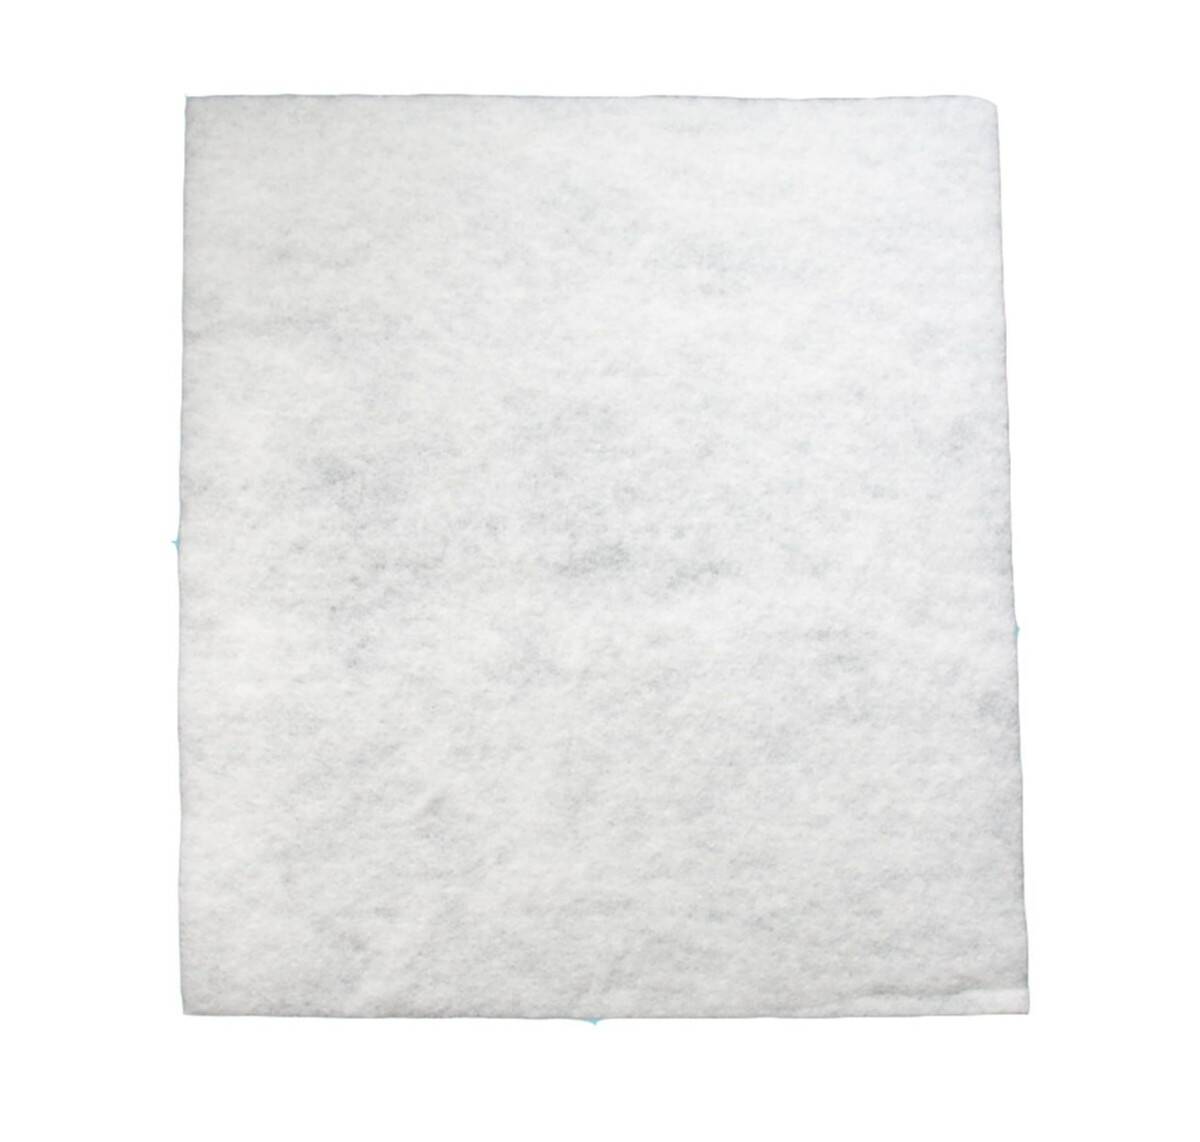 FILTR DO OKAPU 50x60 biały pakowany (Zdjęcie 1)